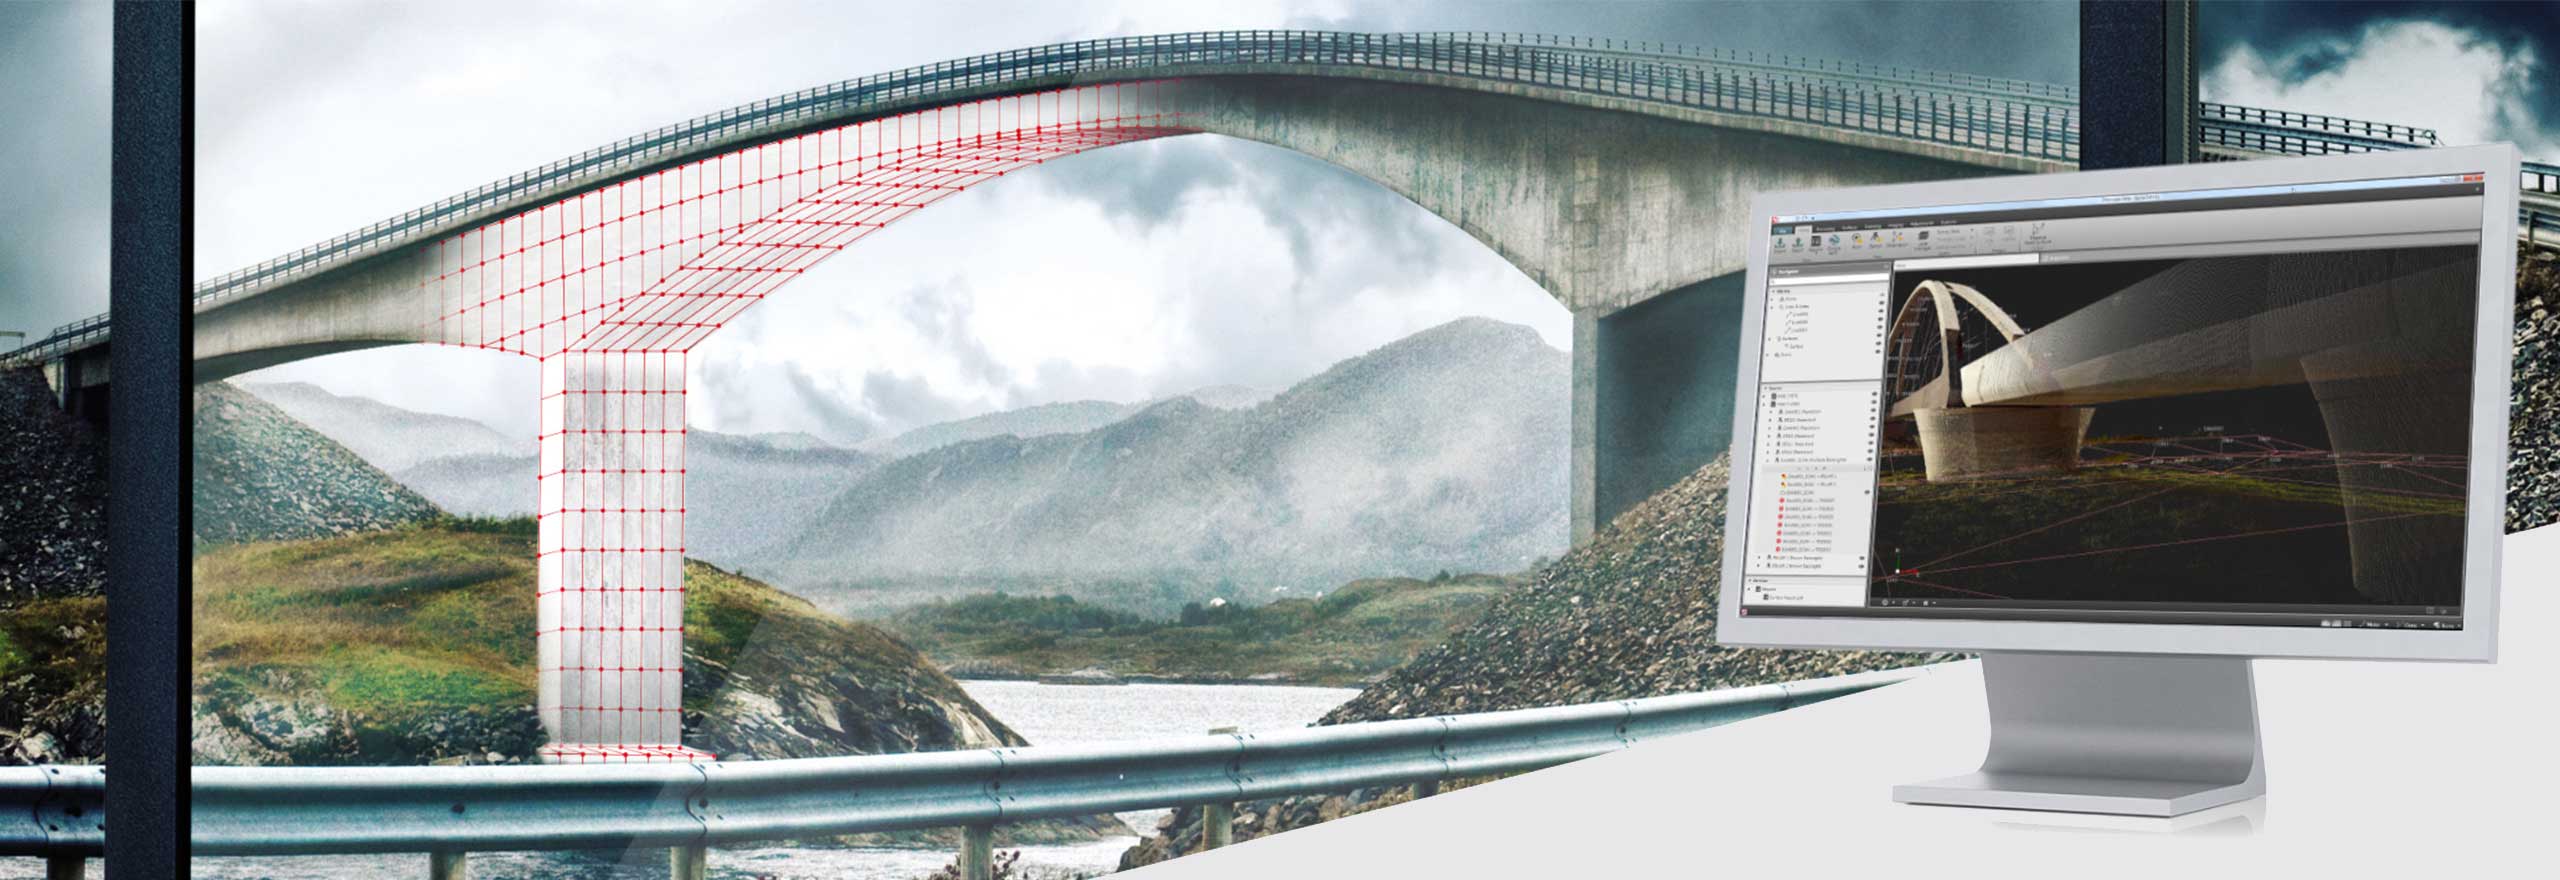 modelo digital de un puente visualizado en el software topográfico Leica Infinity 